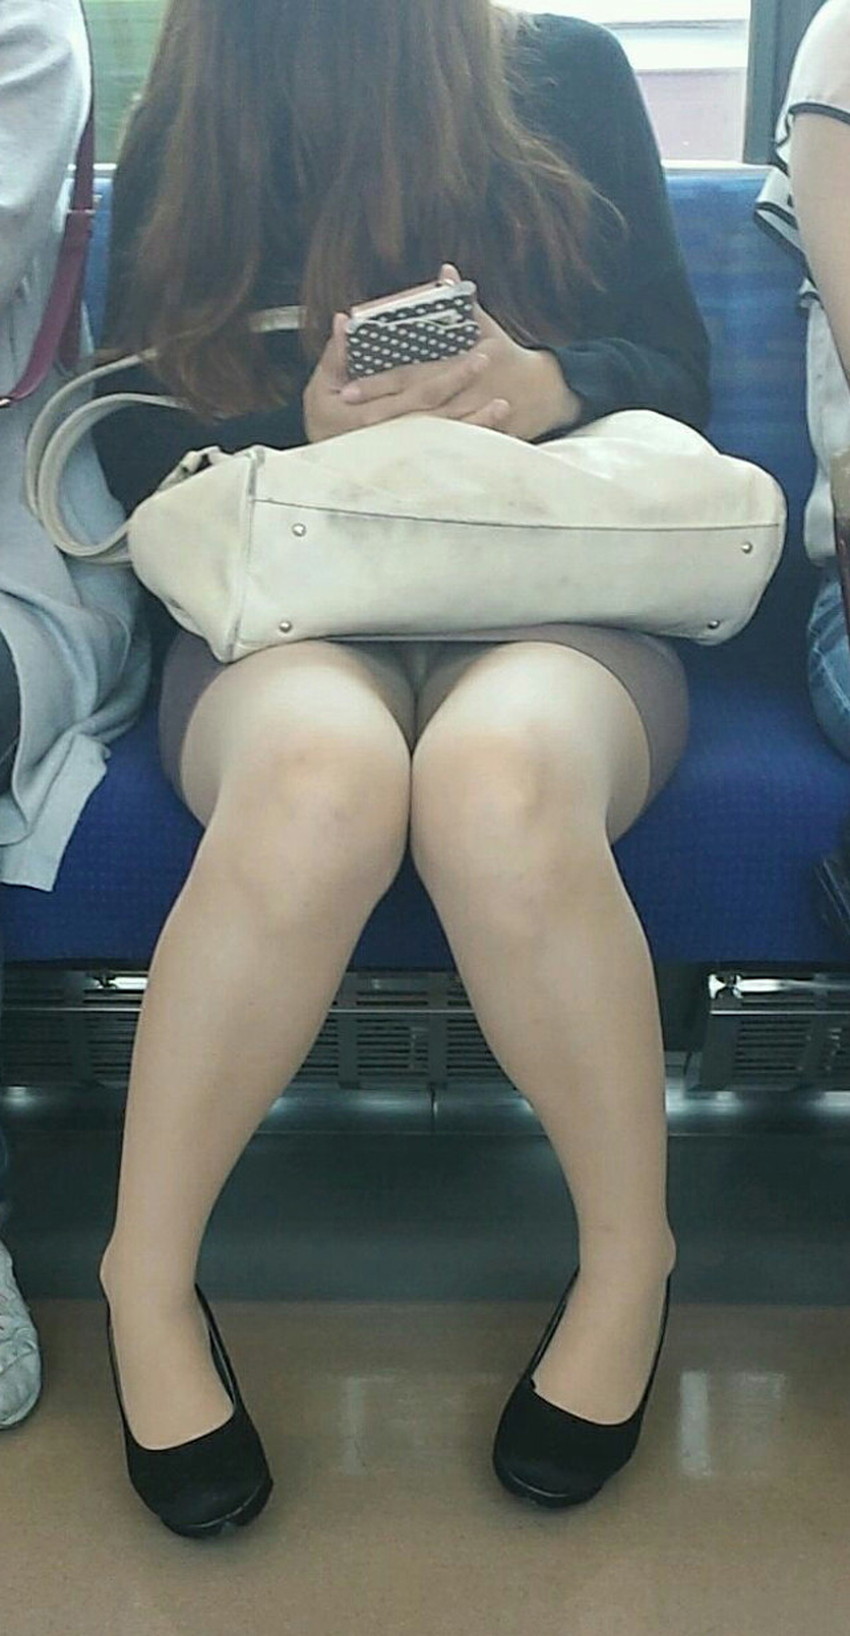 【居眠りパンチラエロ画像】居眠りOLが電車内でお股ユルユル！ww居眠り美女の無防備なパンチラを盗撮した居眠りパンチラのエロ画像集！ww【80枚】 80